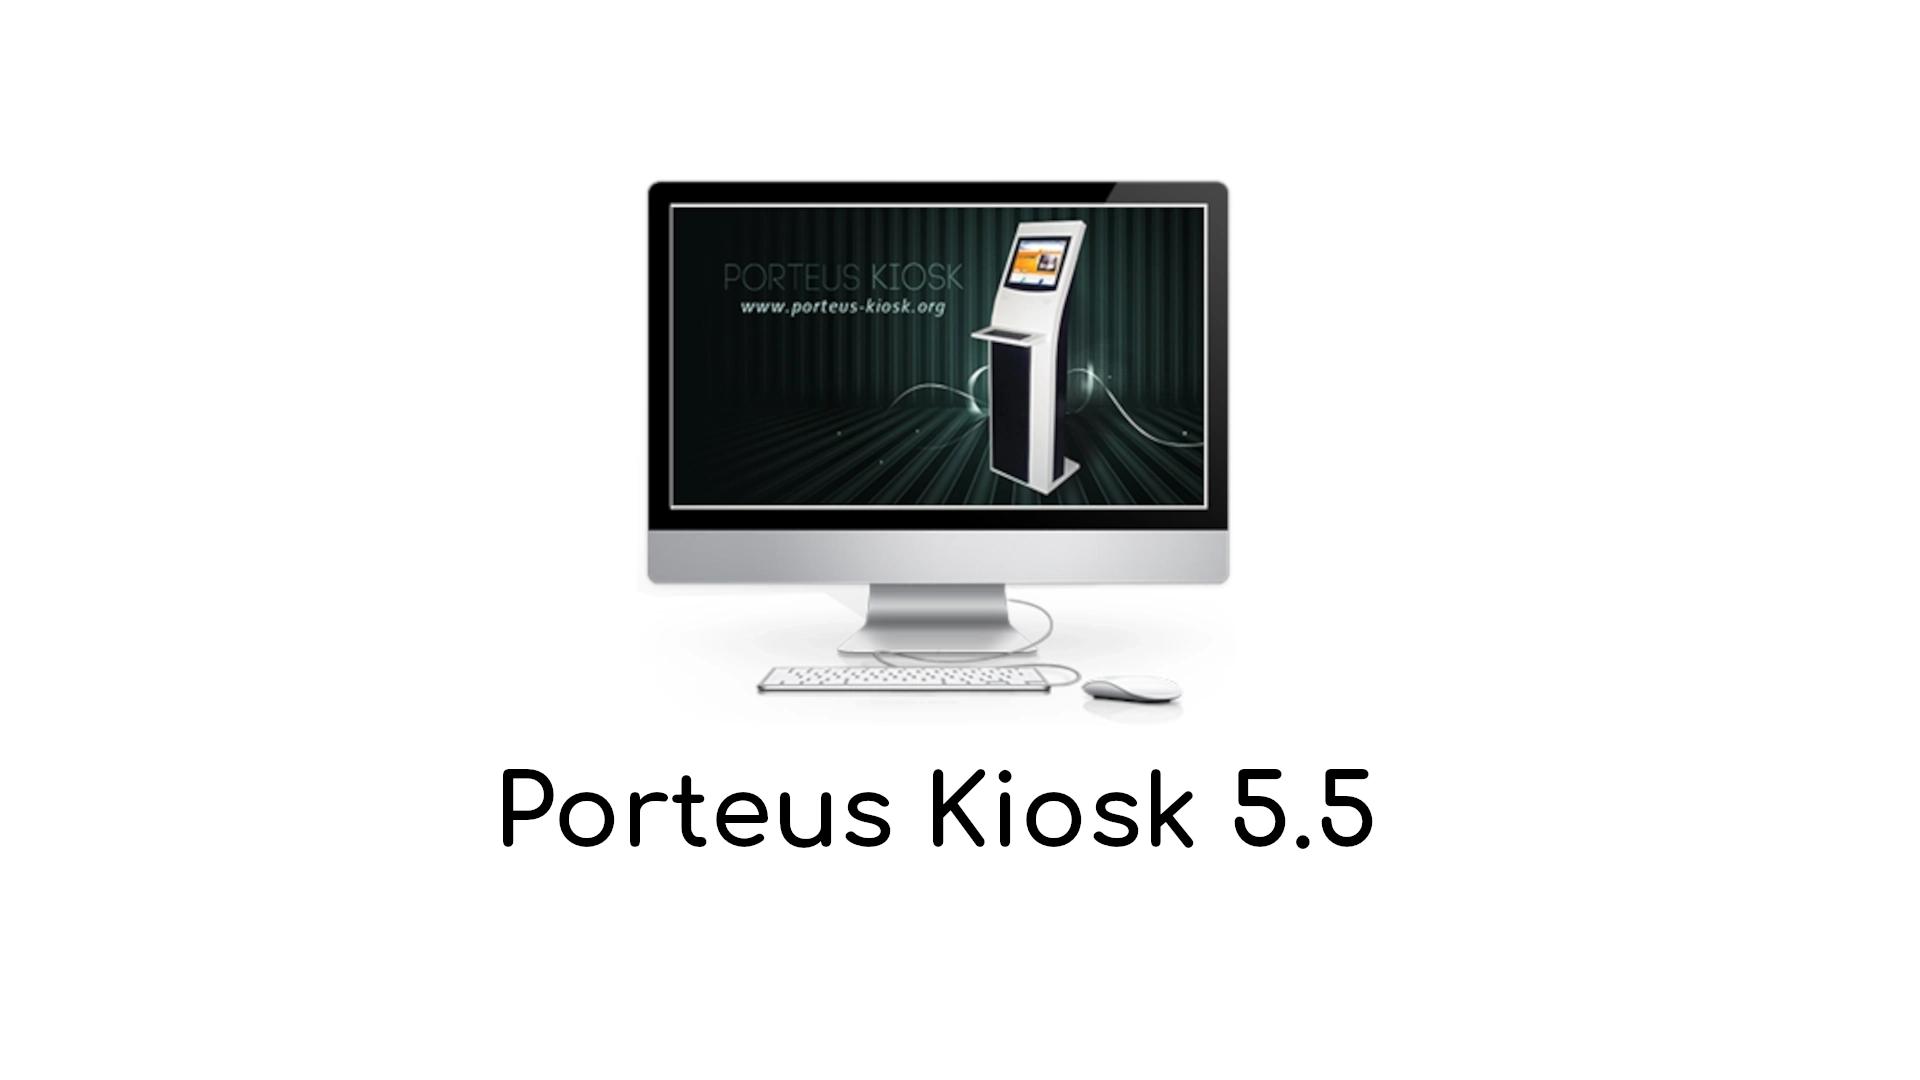 Gentoo-Based Porteus Kiosk 5.5 Released with Linux Kernel 6.1 LTS, exFAT Support